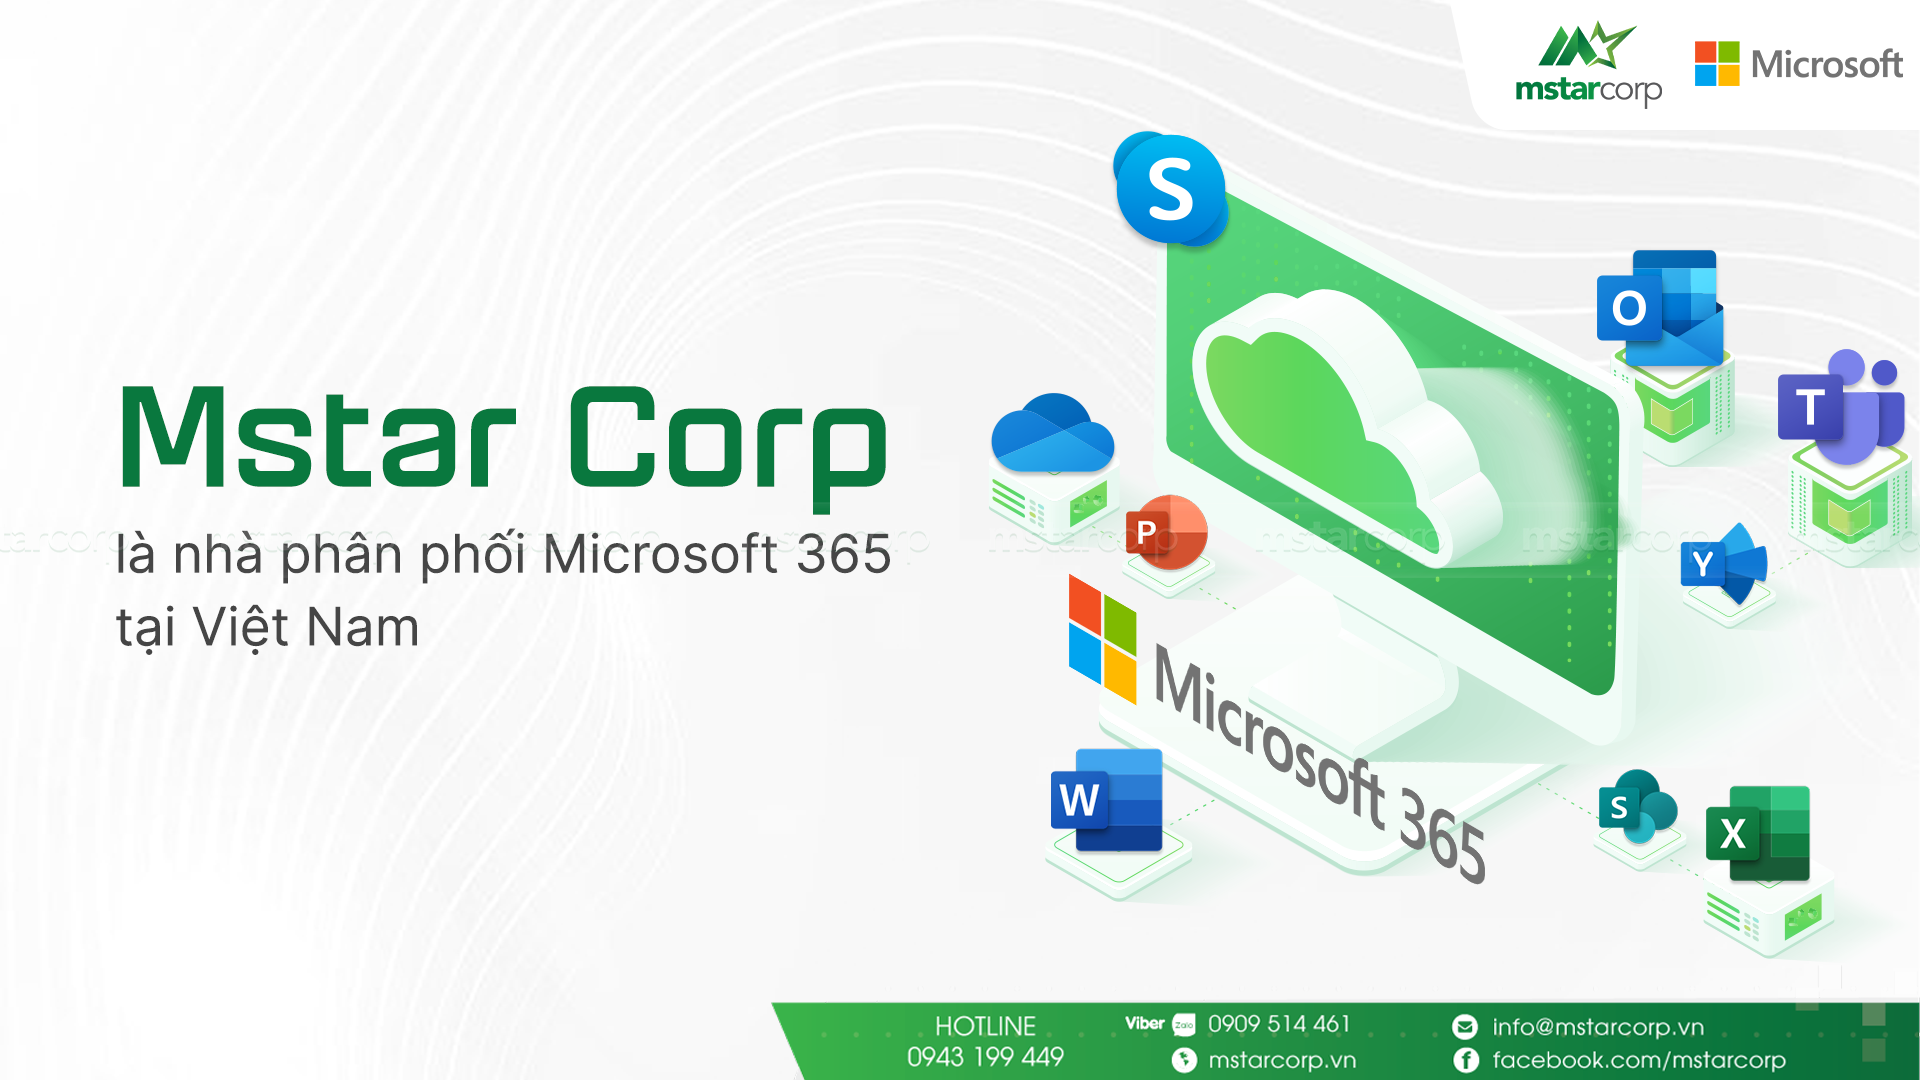 Mstar Corp là nhà phân phối Microsoft 365 cho doanh nghiệp bán lẻ tại Việt Nam